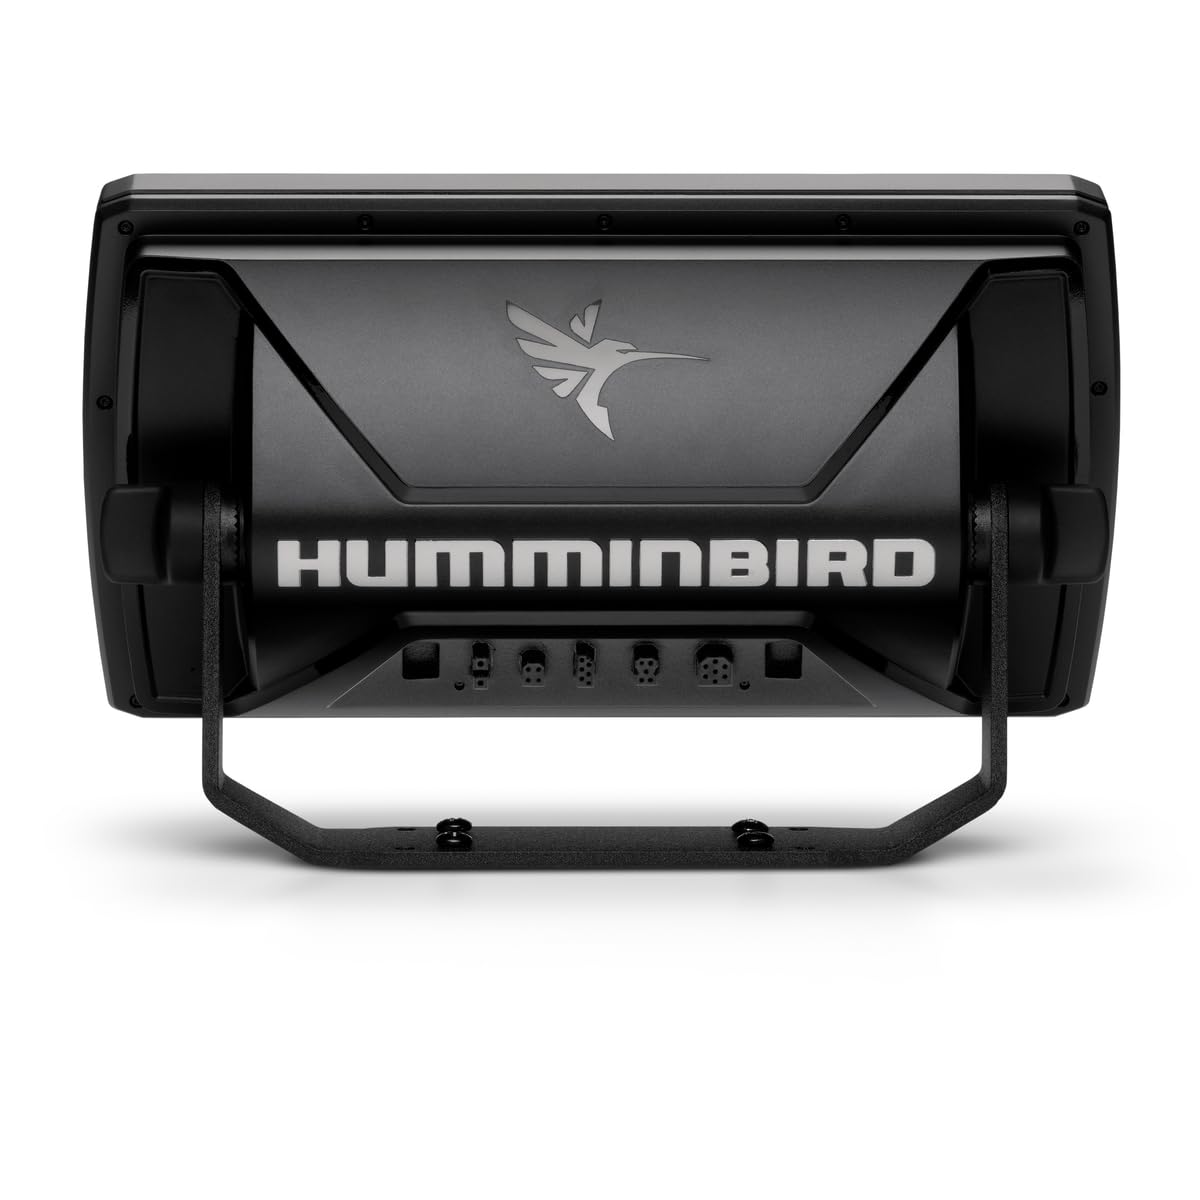 Humminbird 411950-1 Helix 9 MSI+ GPS G4N